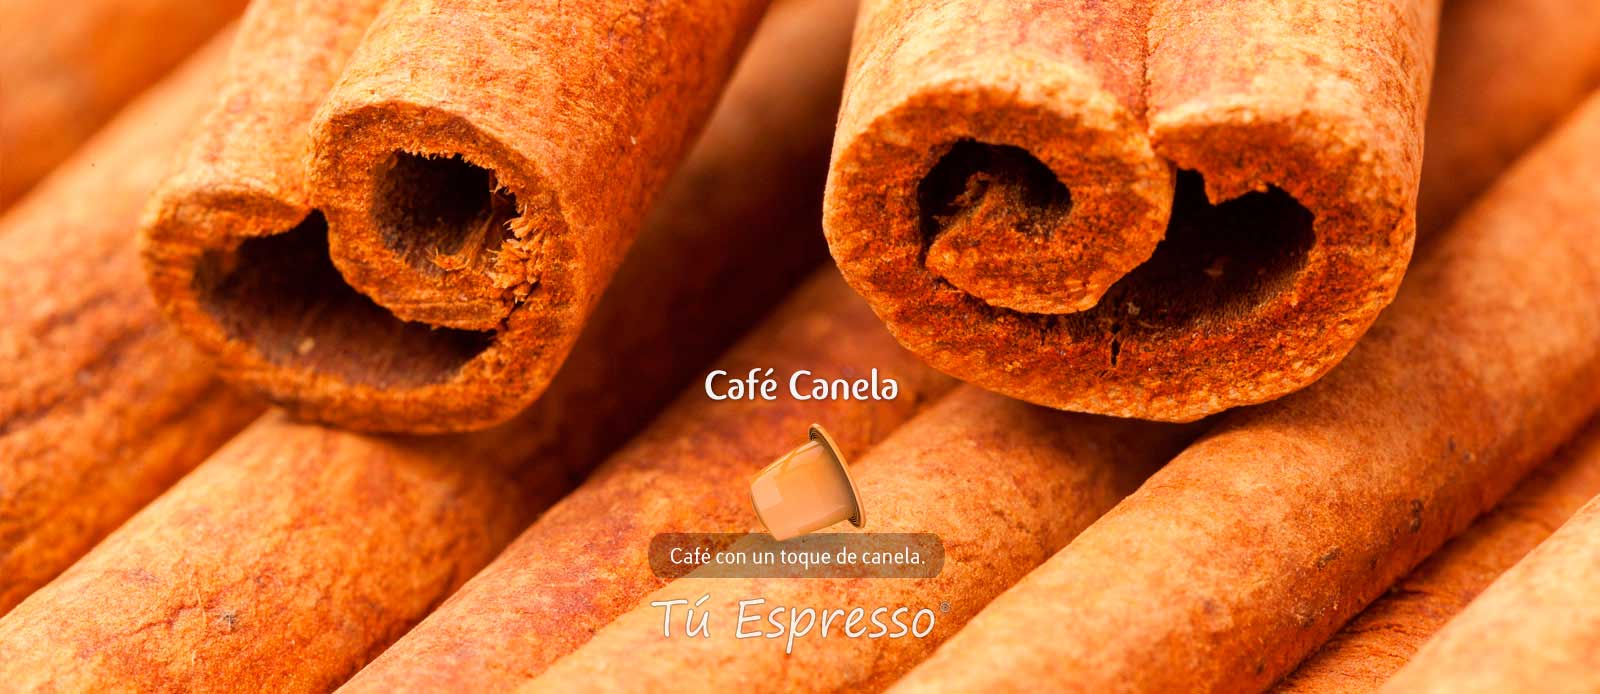 Café canela cápsula de café compatible con sabor